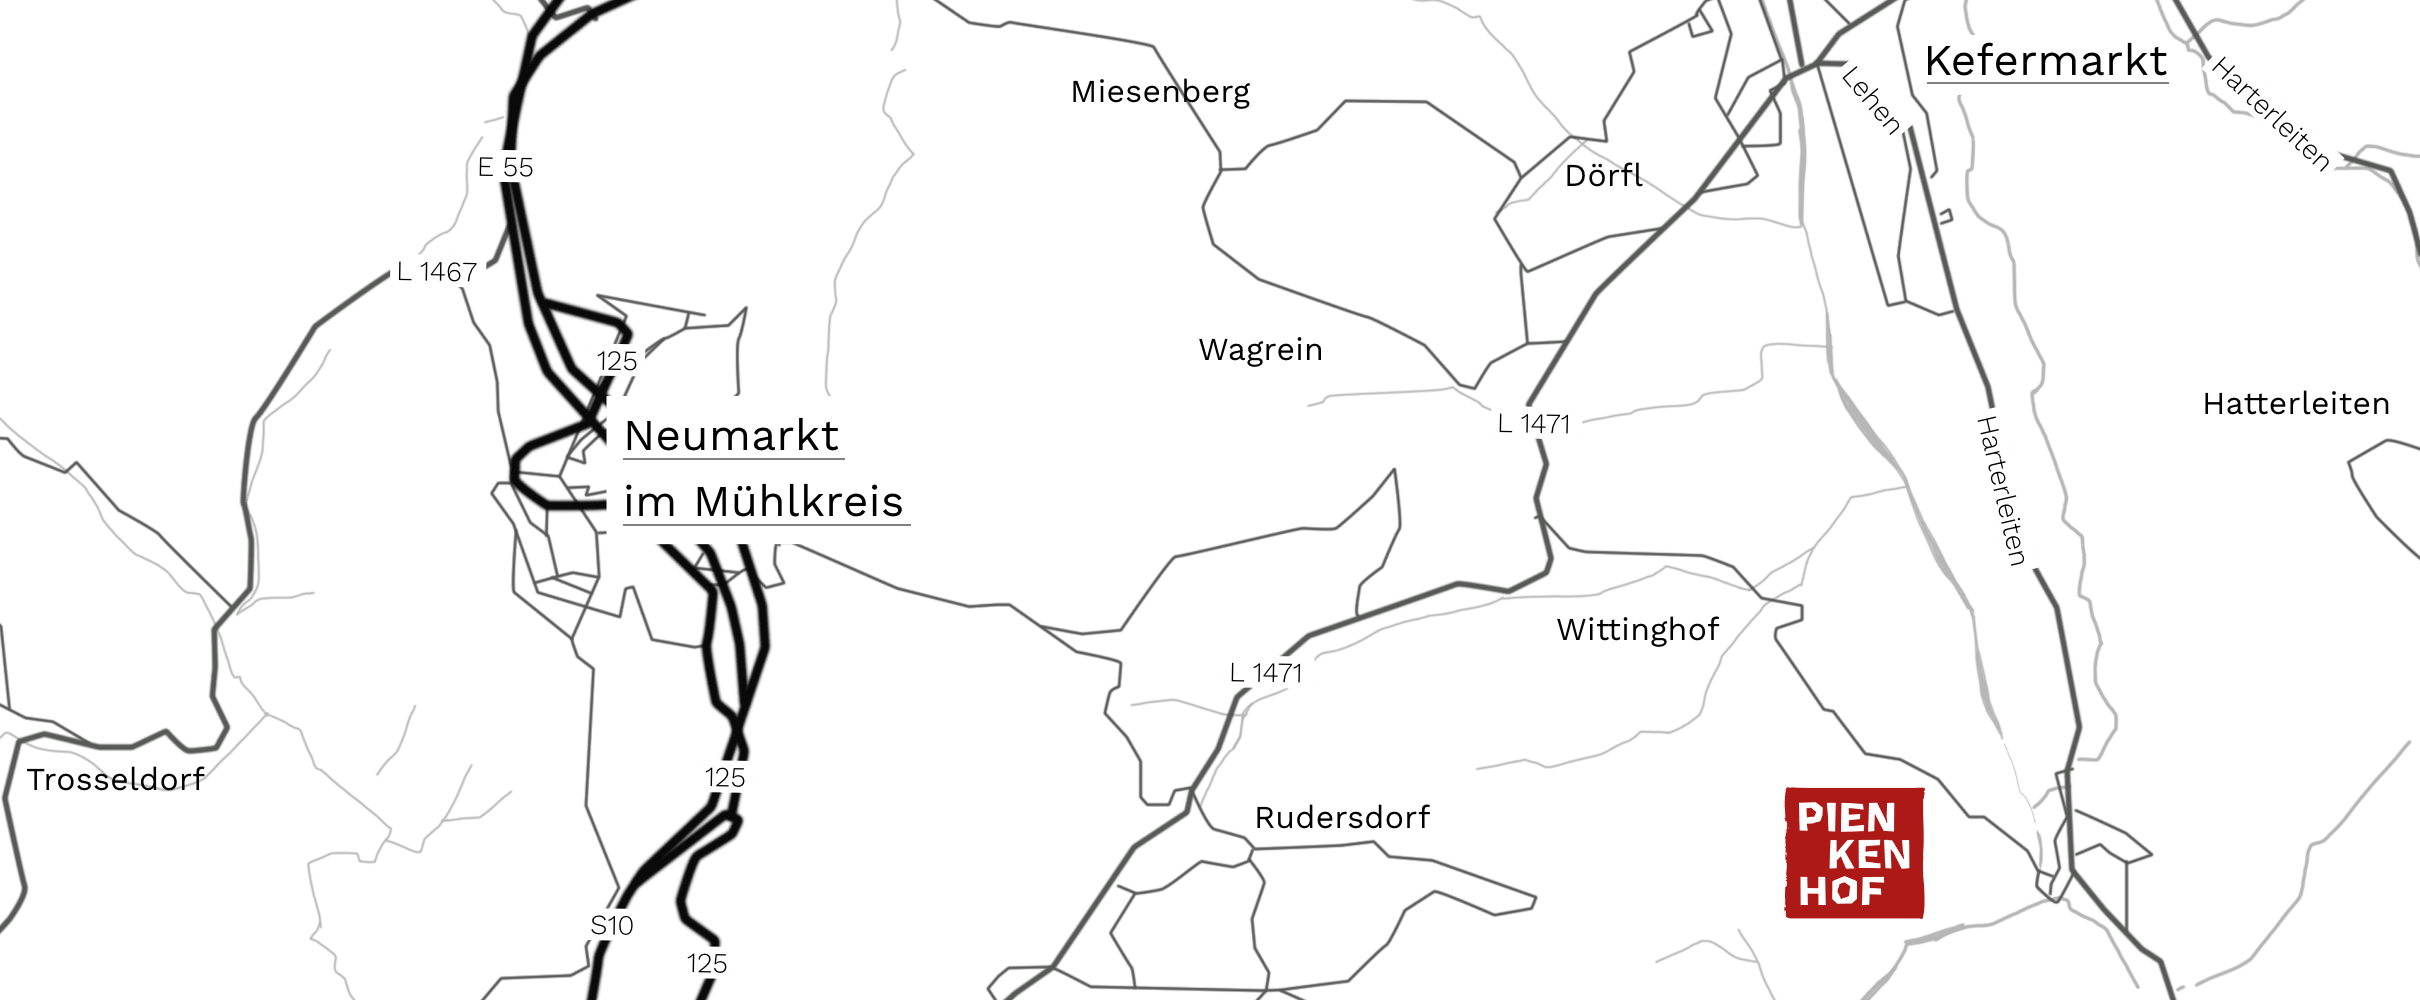 Map_Pienkenhof